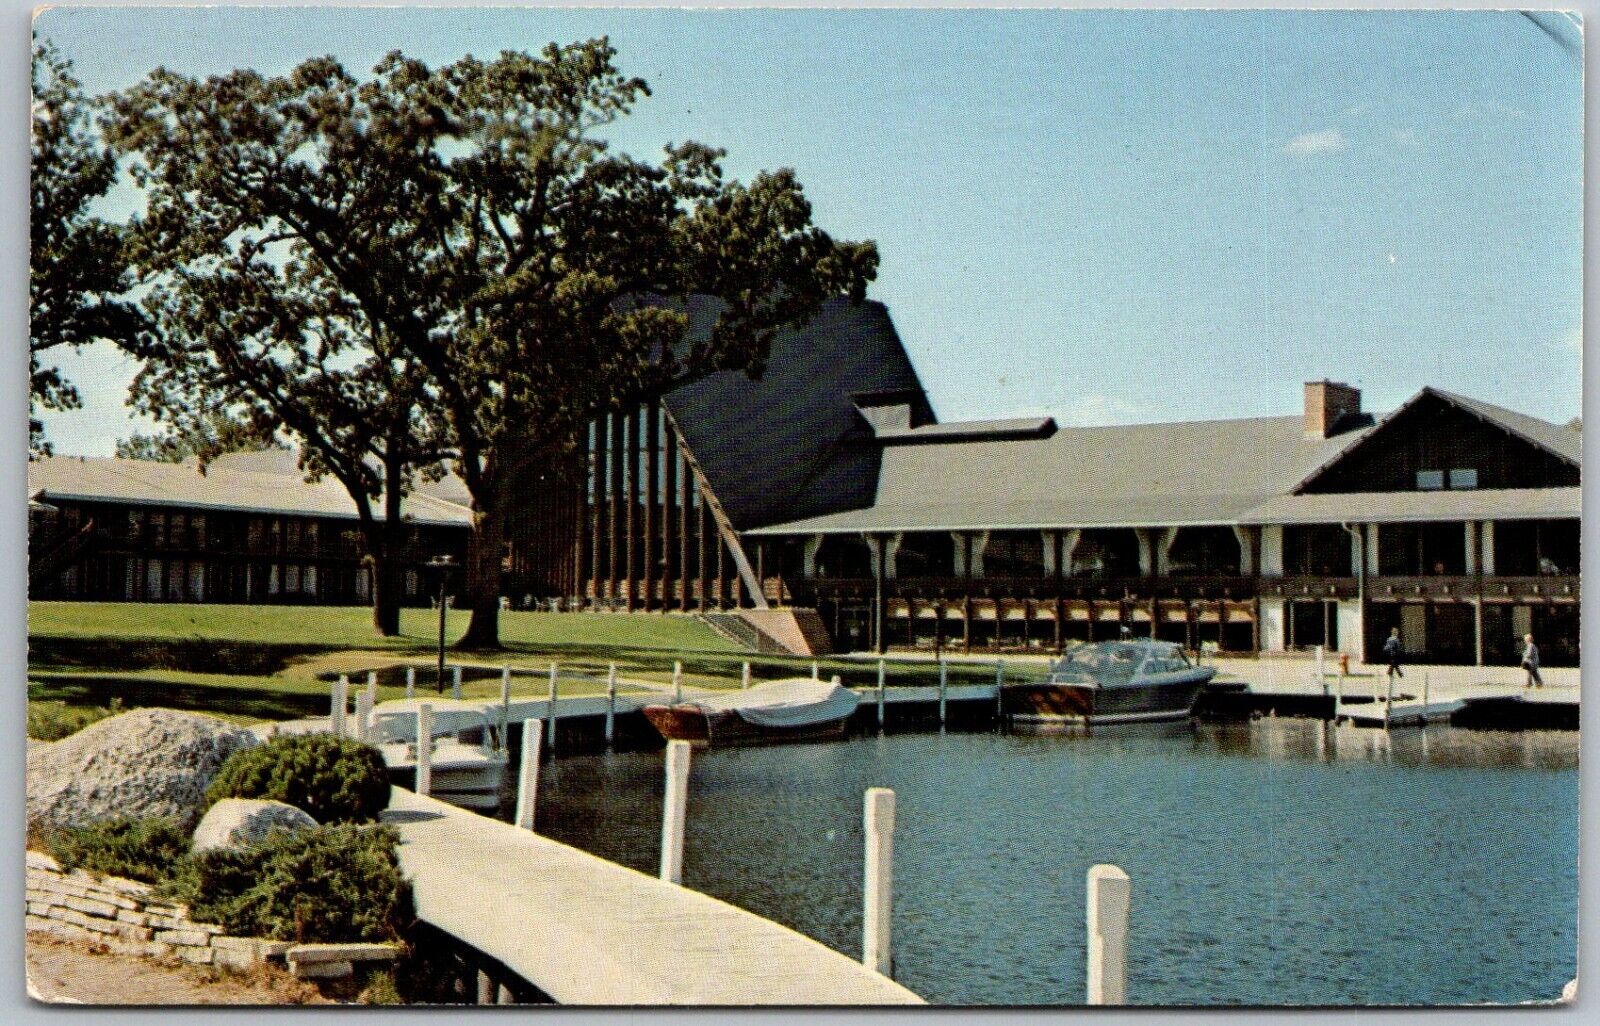 Fontana Wisconsin 1960s Postcard The Abbey Motel And Marina at Lake Geneva